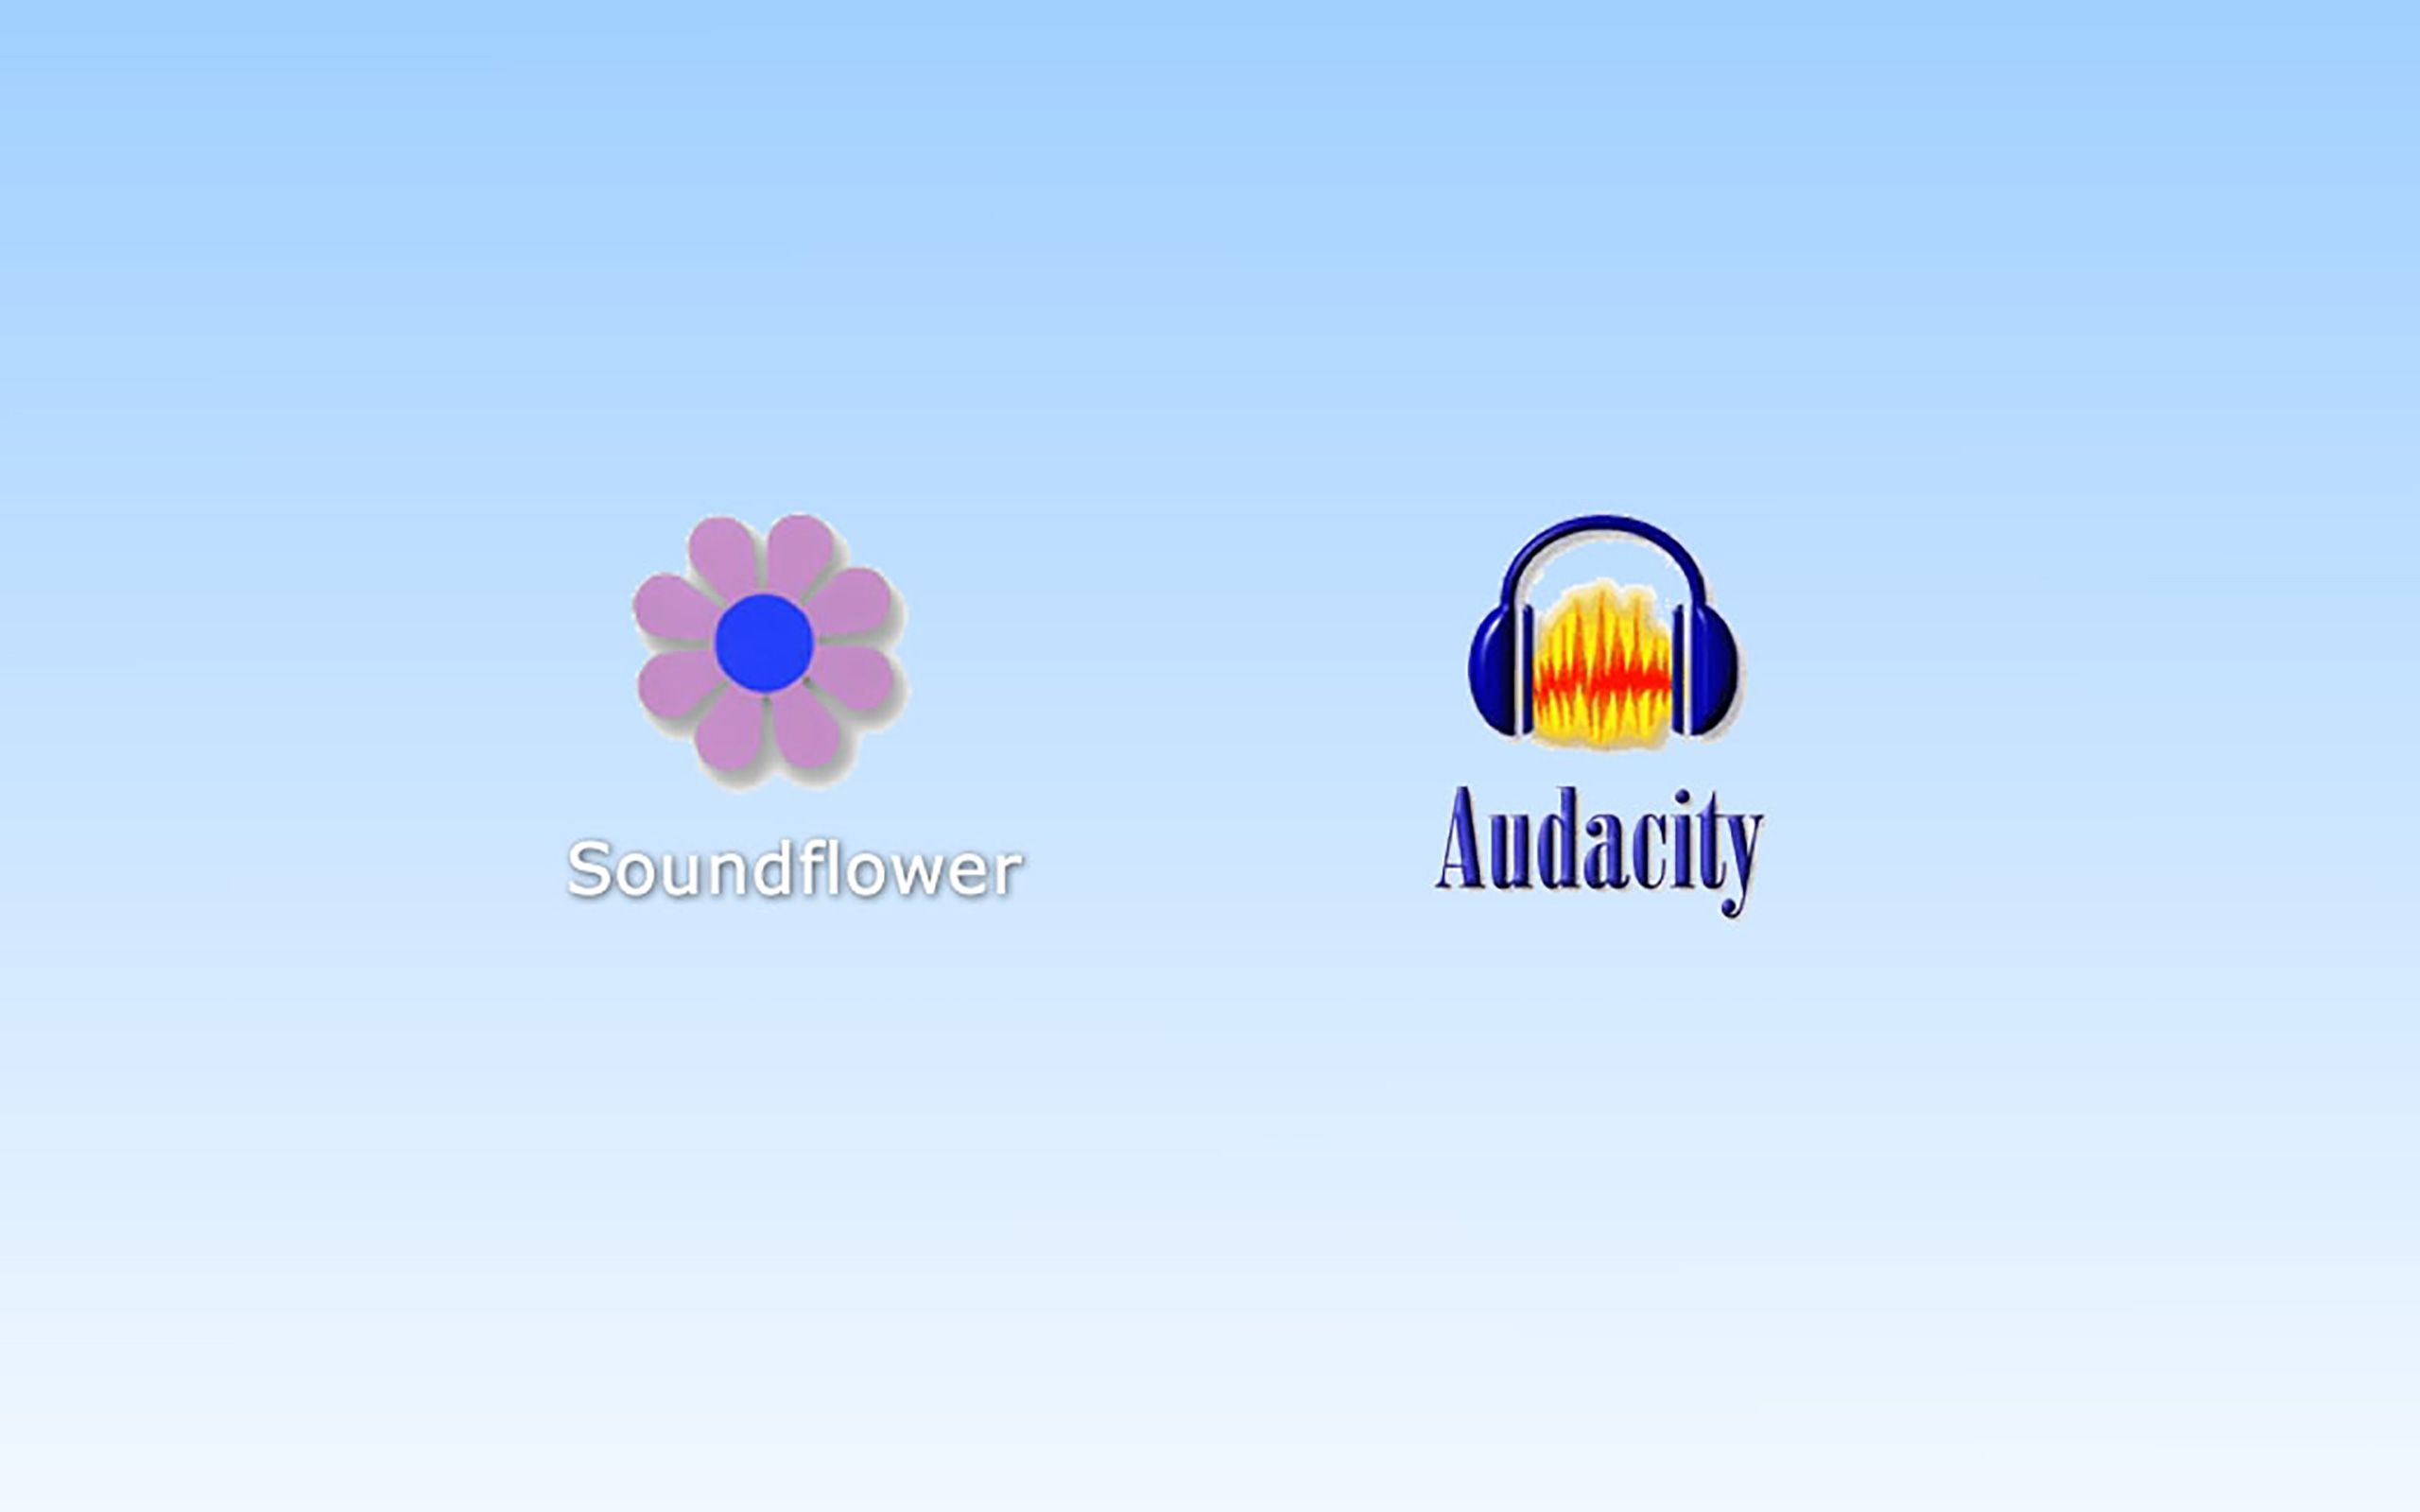 soundflower osx